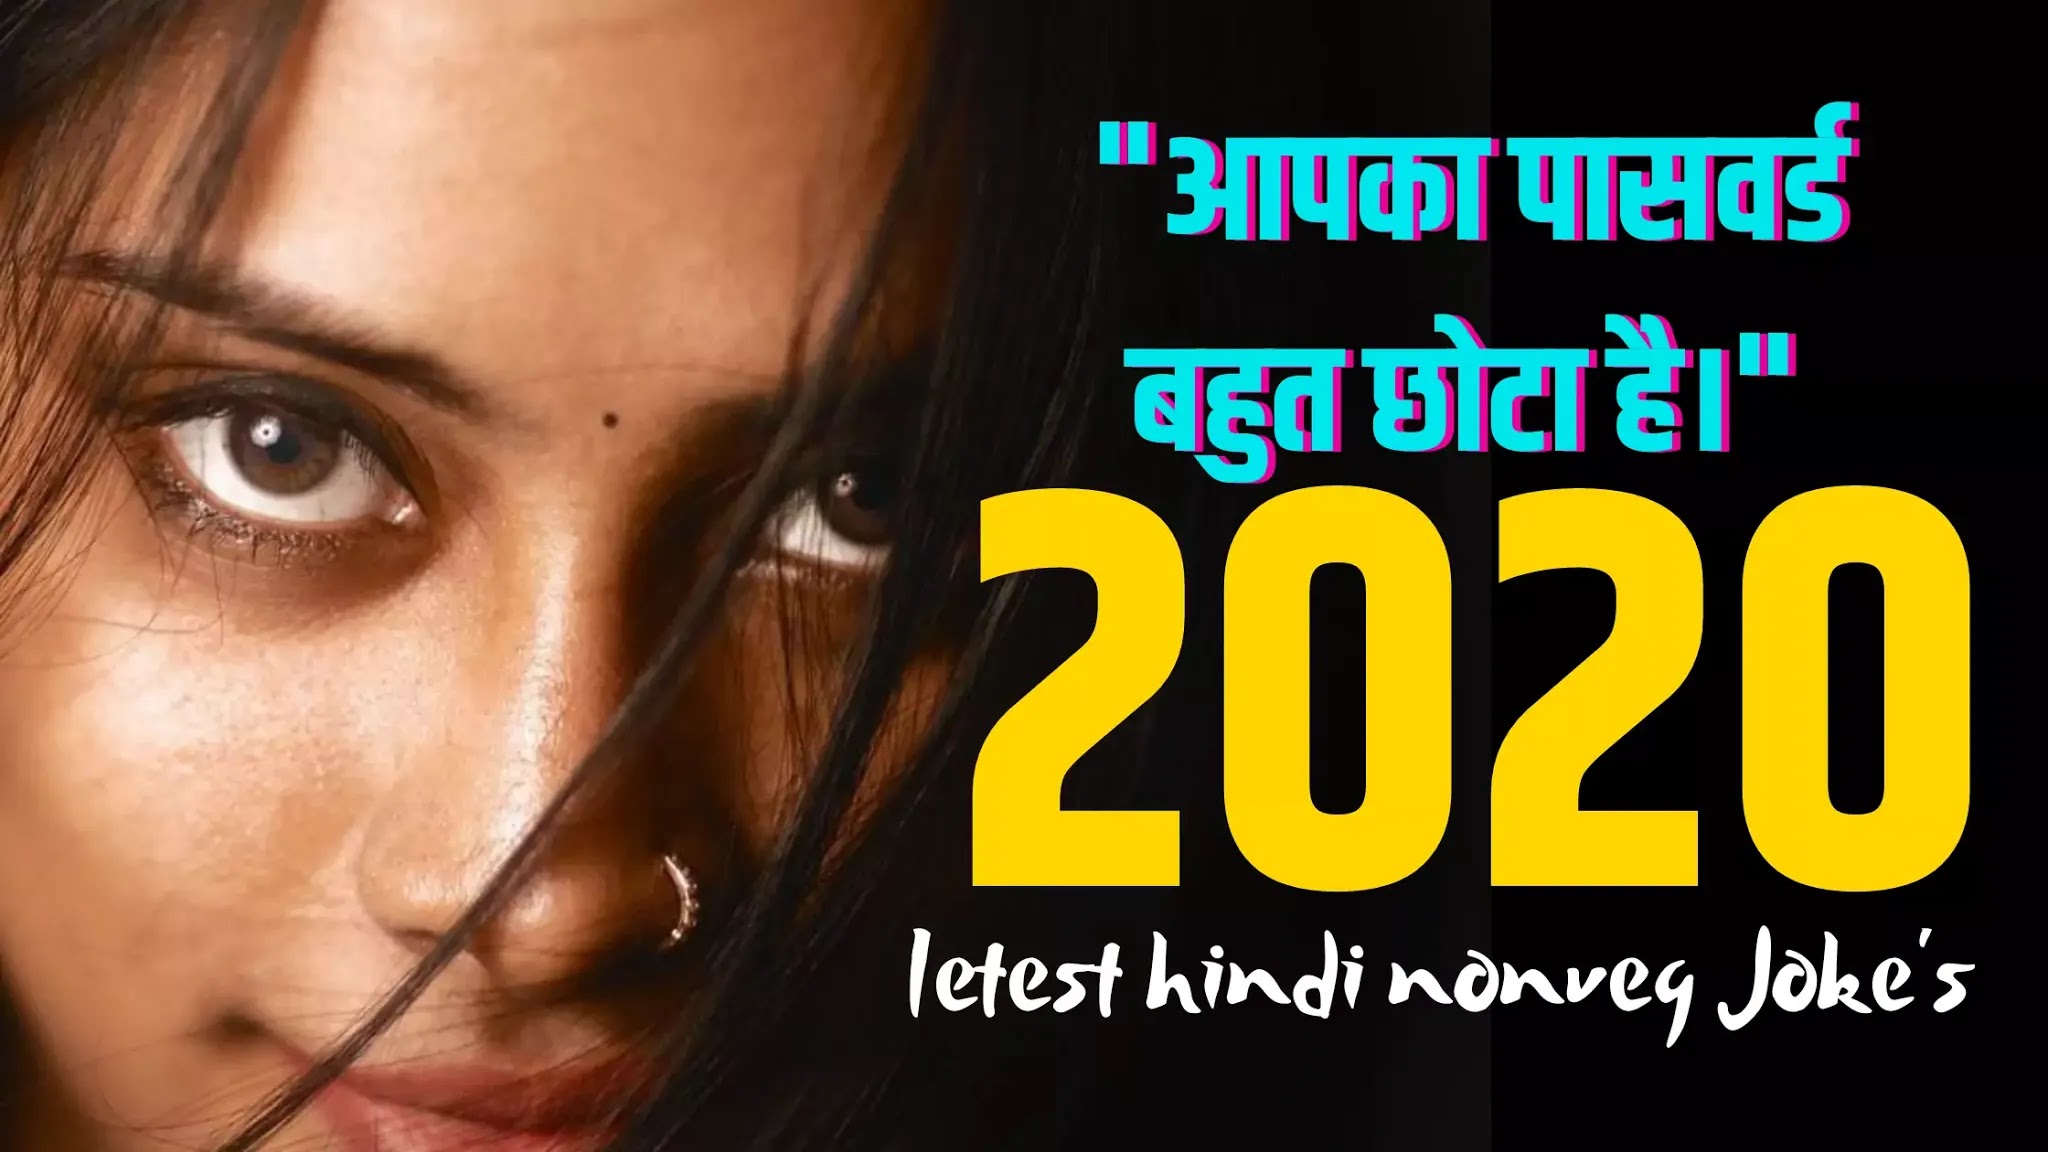 Non veg jokes in hindi 2020, adult jokes,